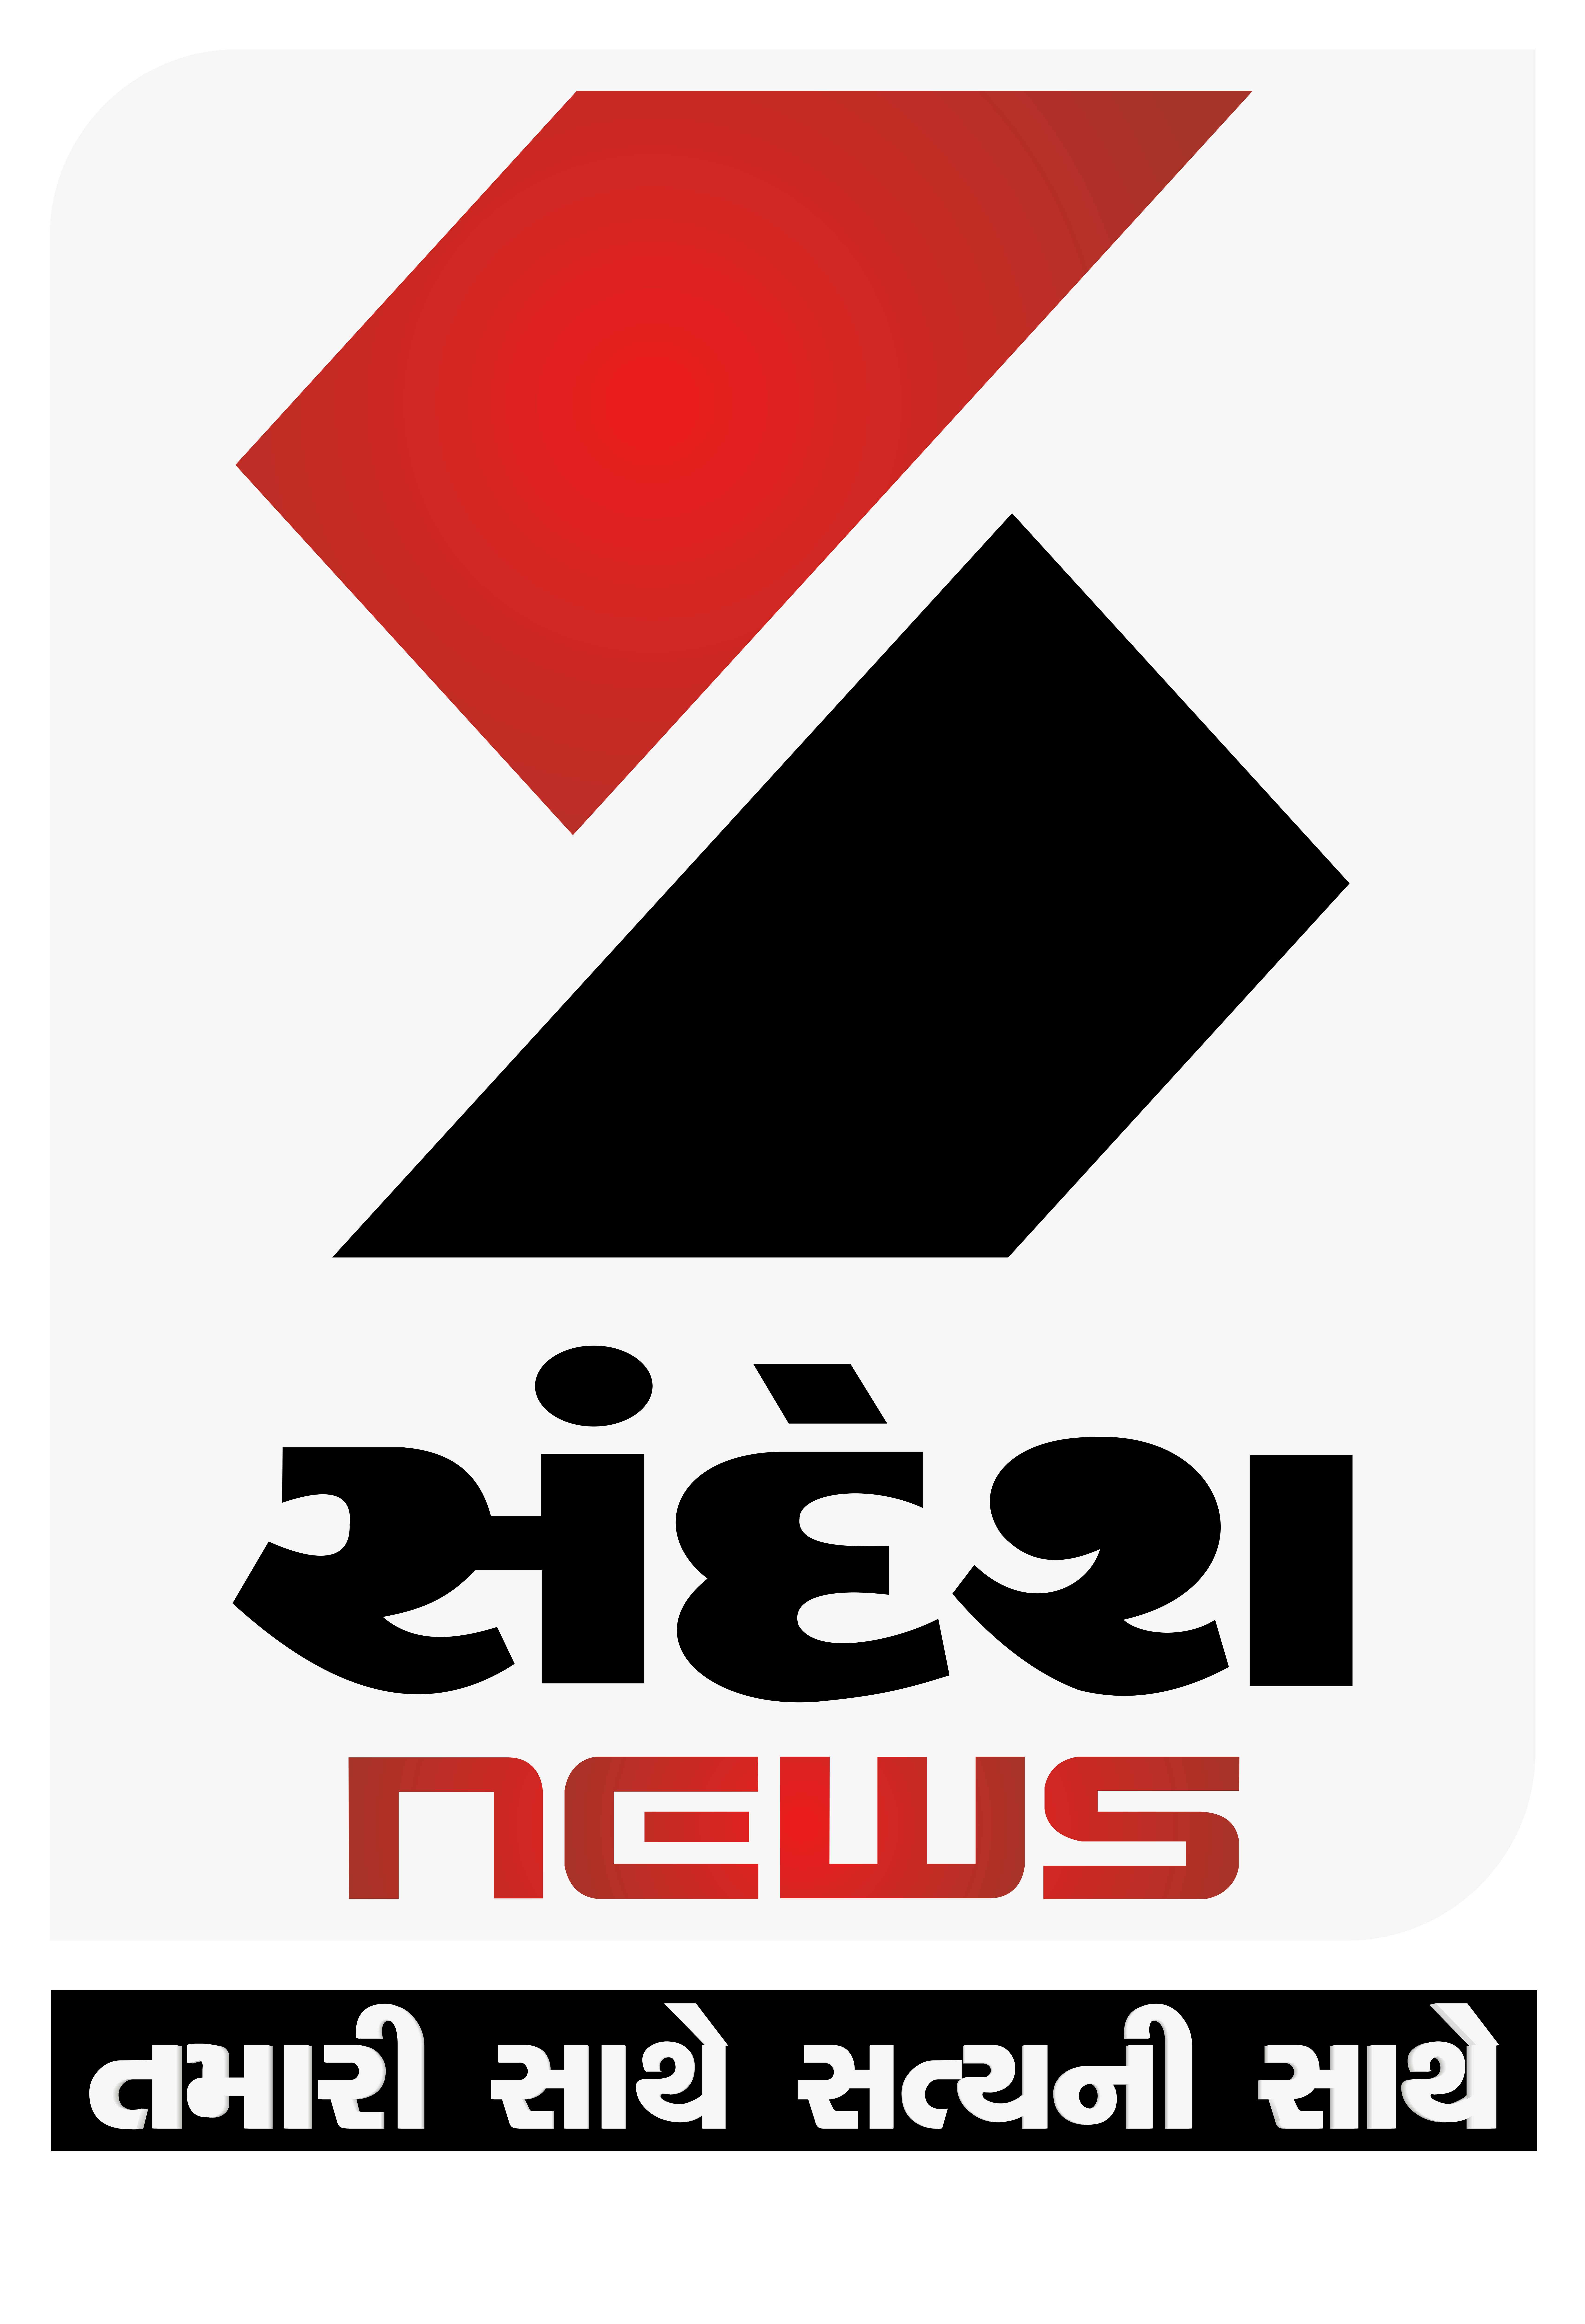 Sandesh News